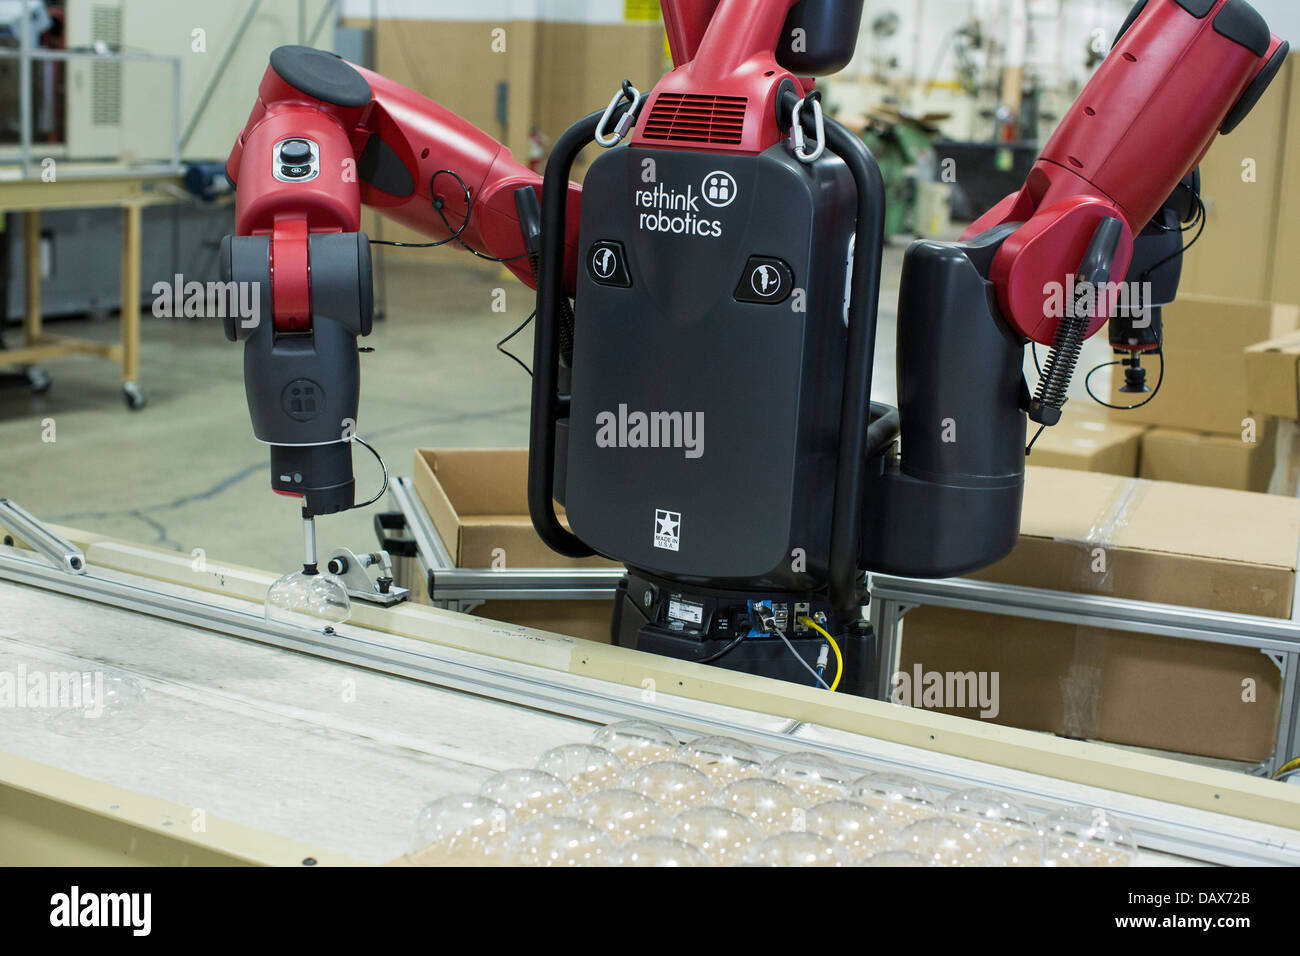 Baxter el robot hechas por replantear la robótica en el grupo Rodona de moldeo de plástico de fábrica. Foto de stock